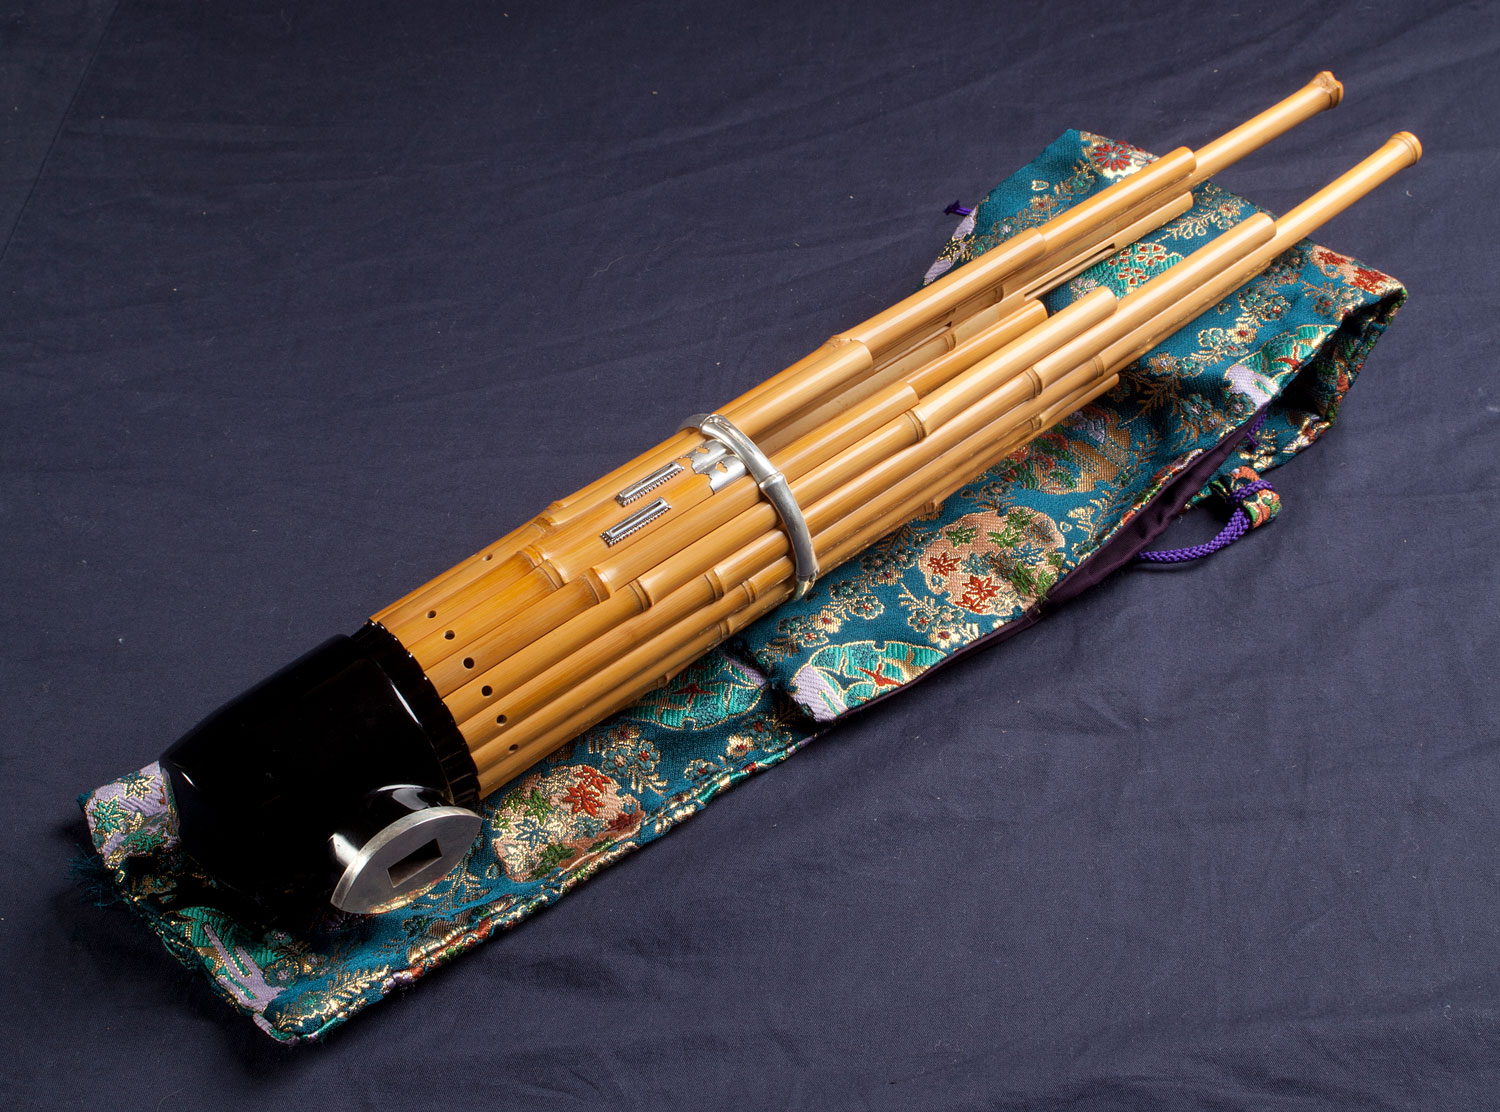 雅楽 調子笛 三種 邦楽 笙 篳篥 龍笛 - 楽器/器材